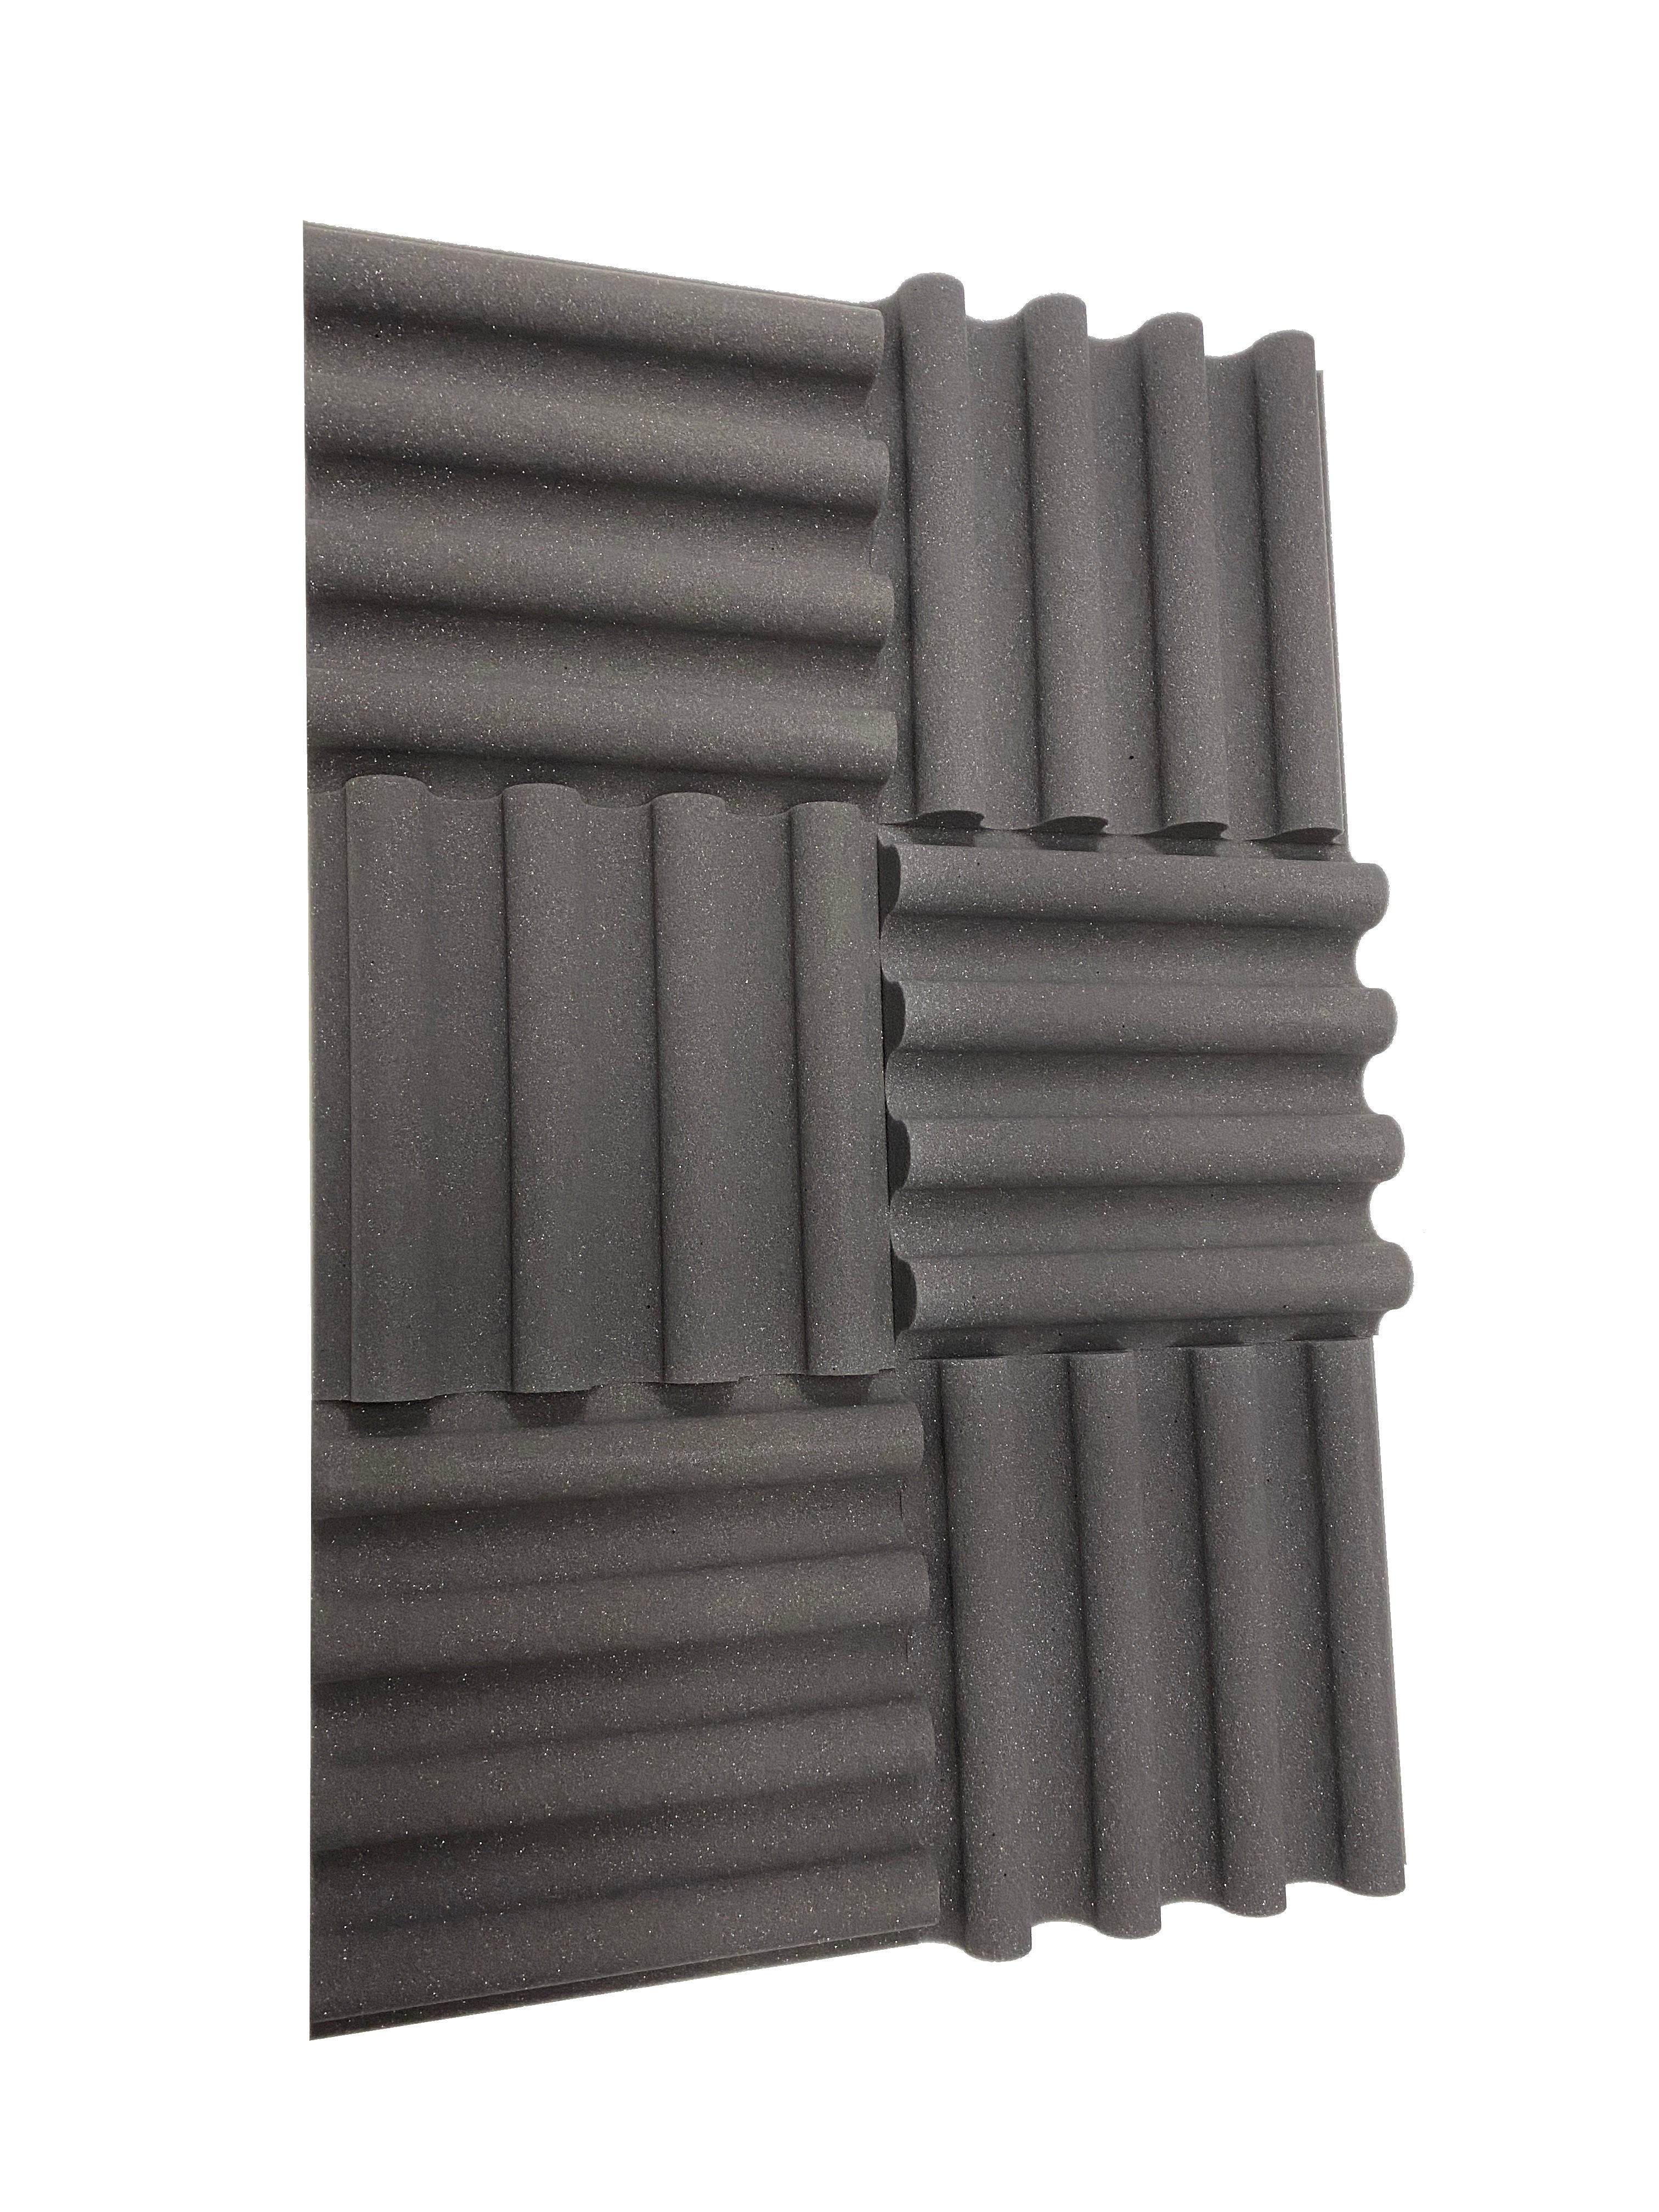 Kaufen mittelgrau Mini Wave 12&quot; Acoustic Studio Foam Tile Pack - 12 Tiles, 1.1qm Coverage